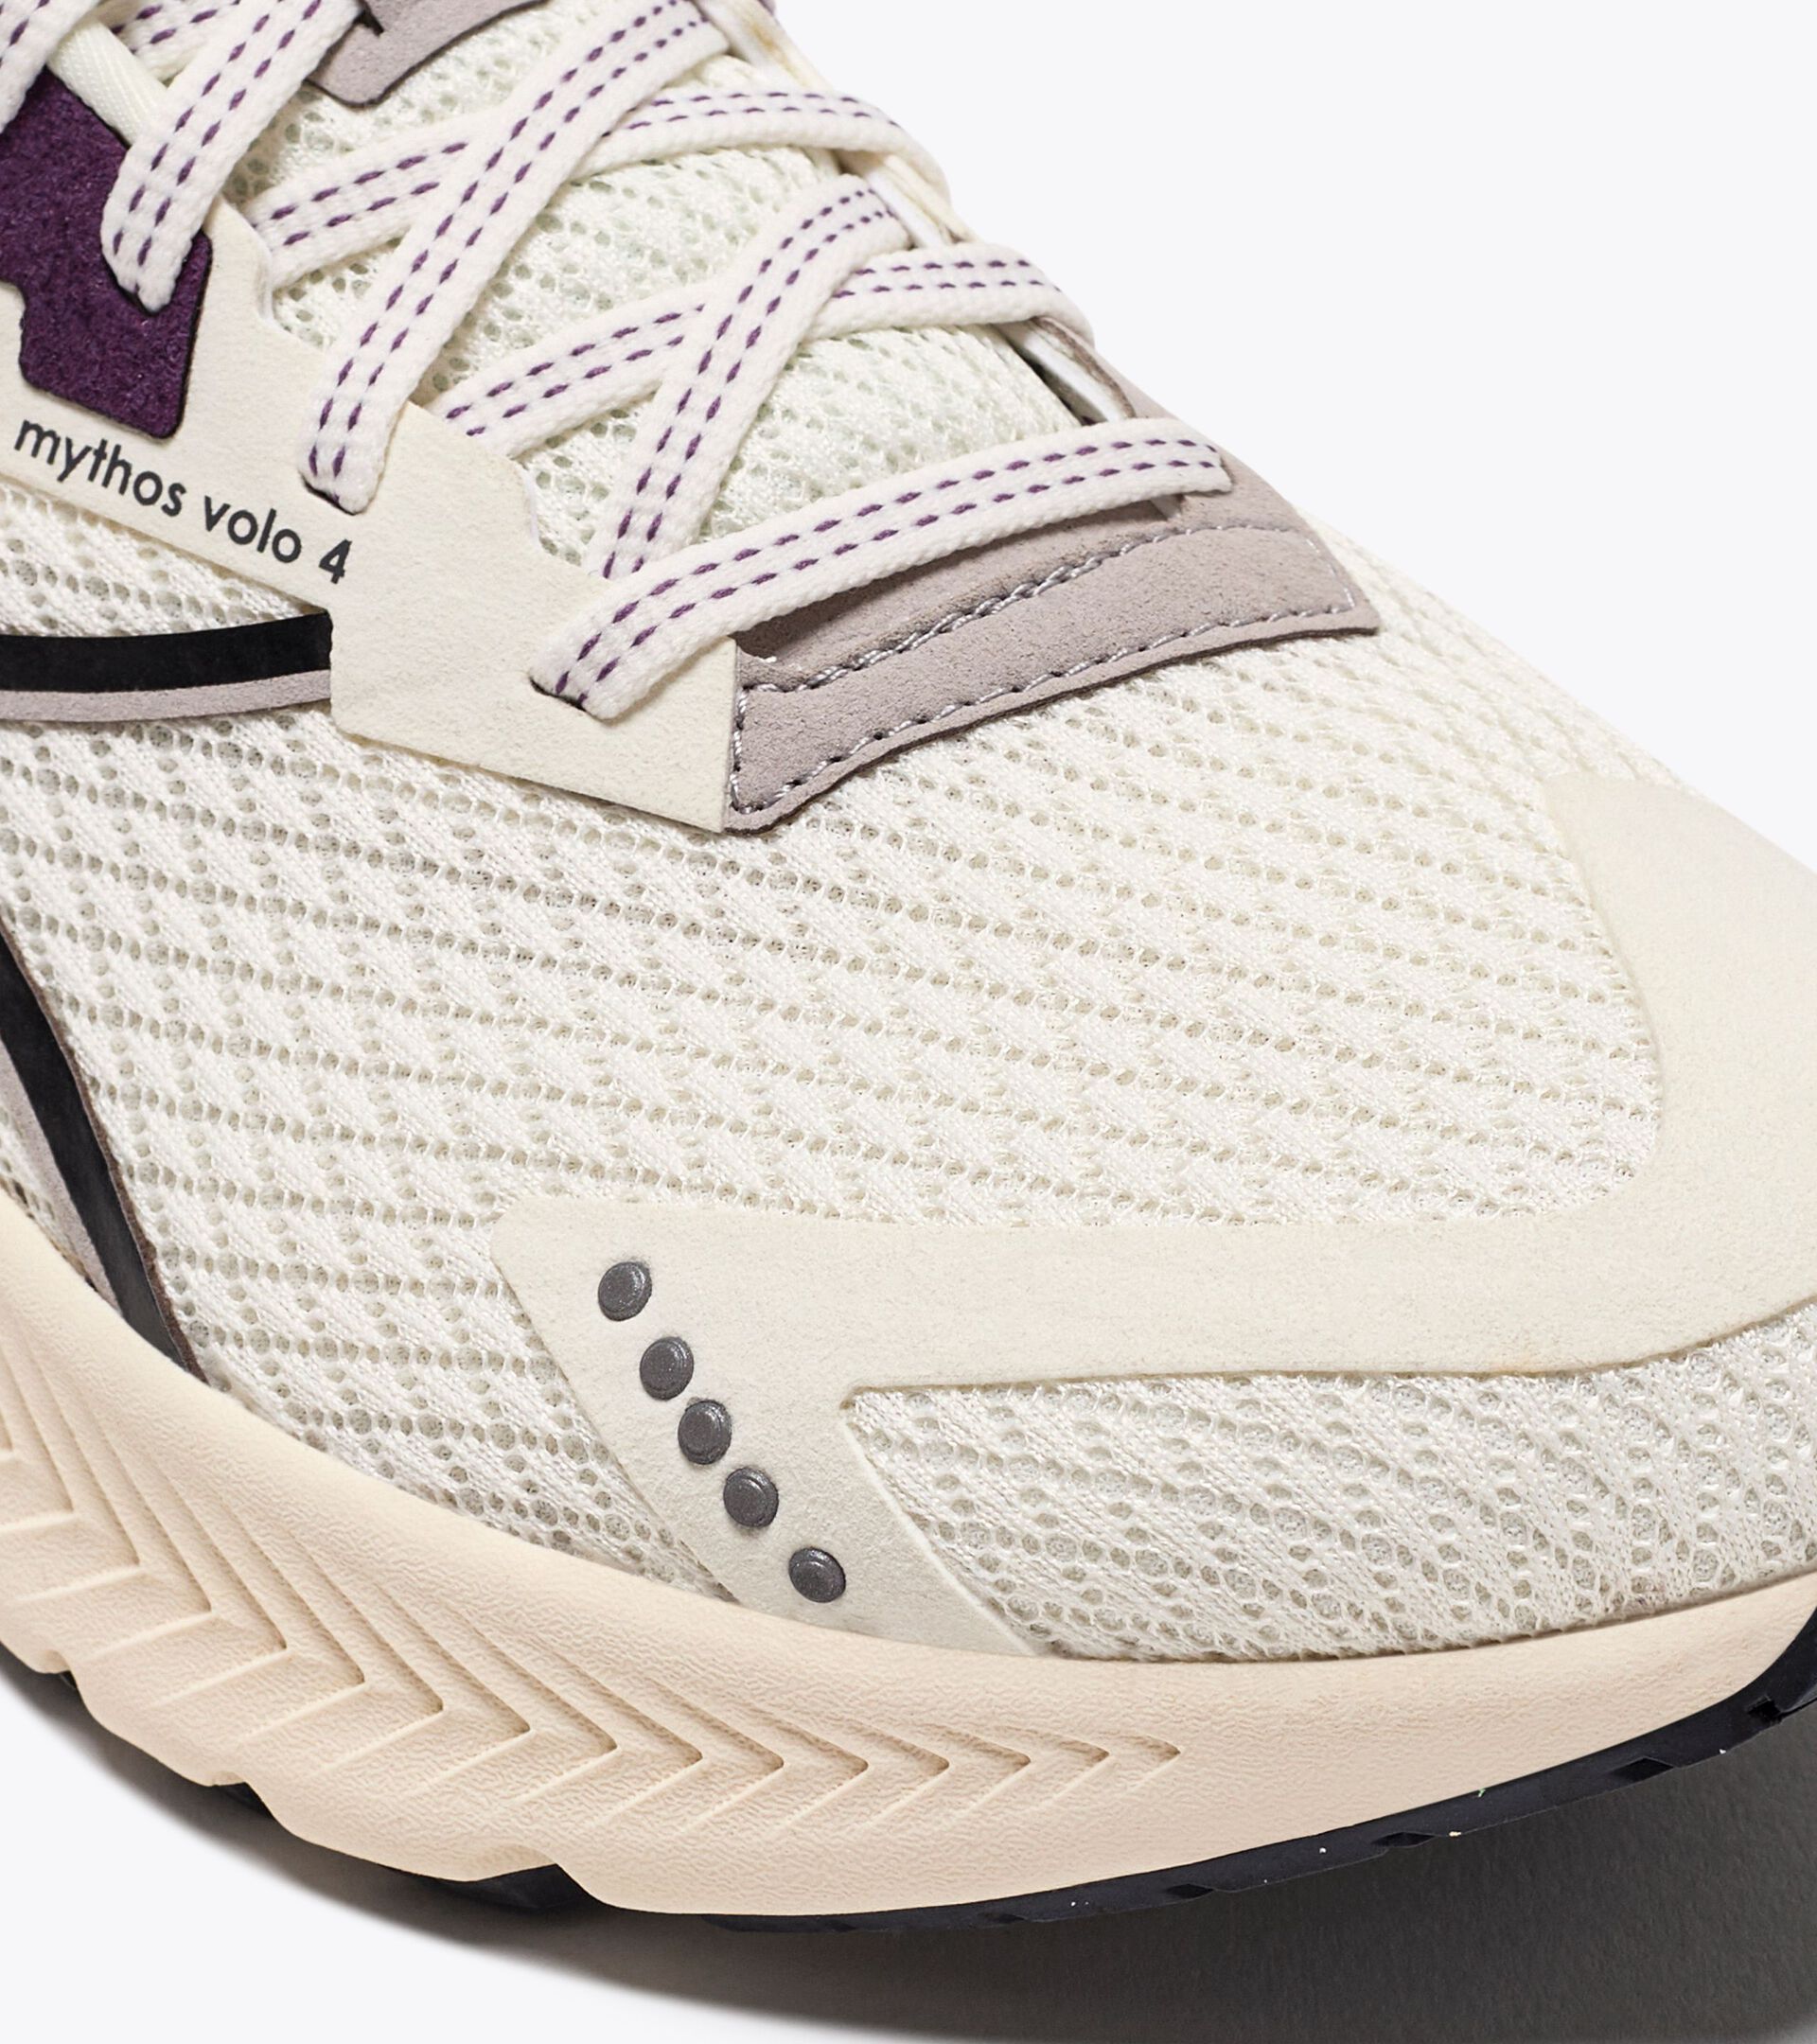 Chaussures de running - Femme - Réalisées avec des matières à impact réduit
 MYTHOS BLUSHIELD VOLO 4  W 2030 BLCHE MURMURE/NR/VLT COUCHER D - Diadora